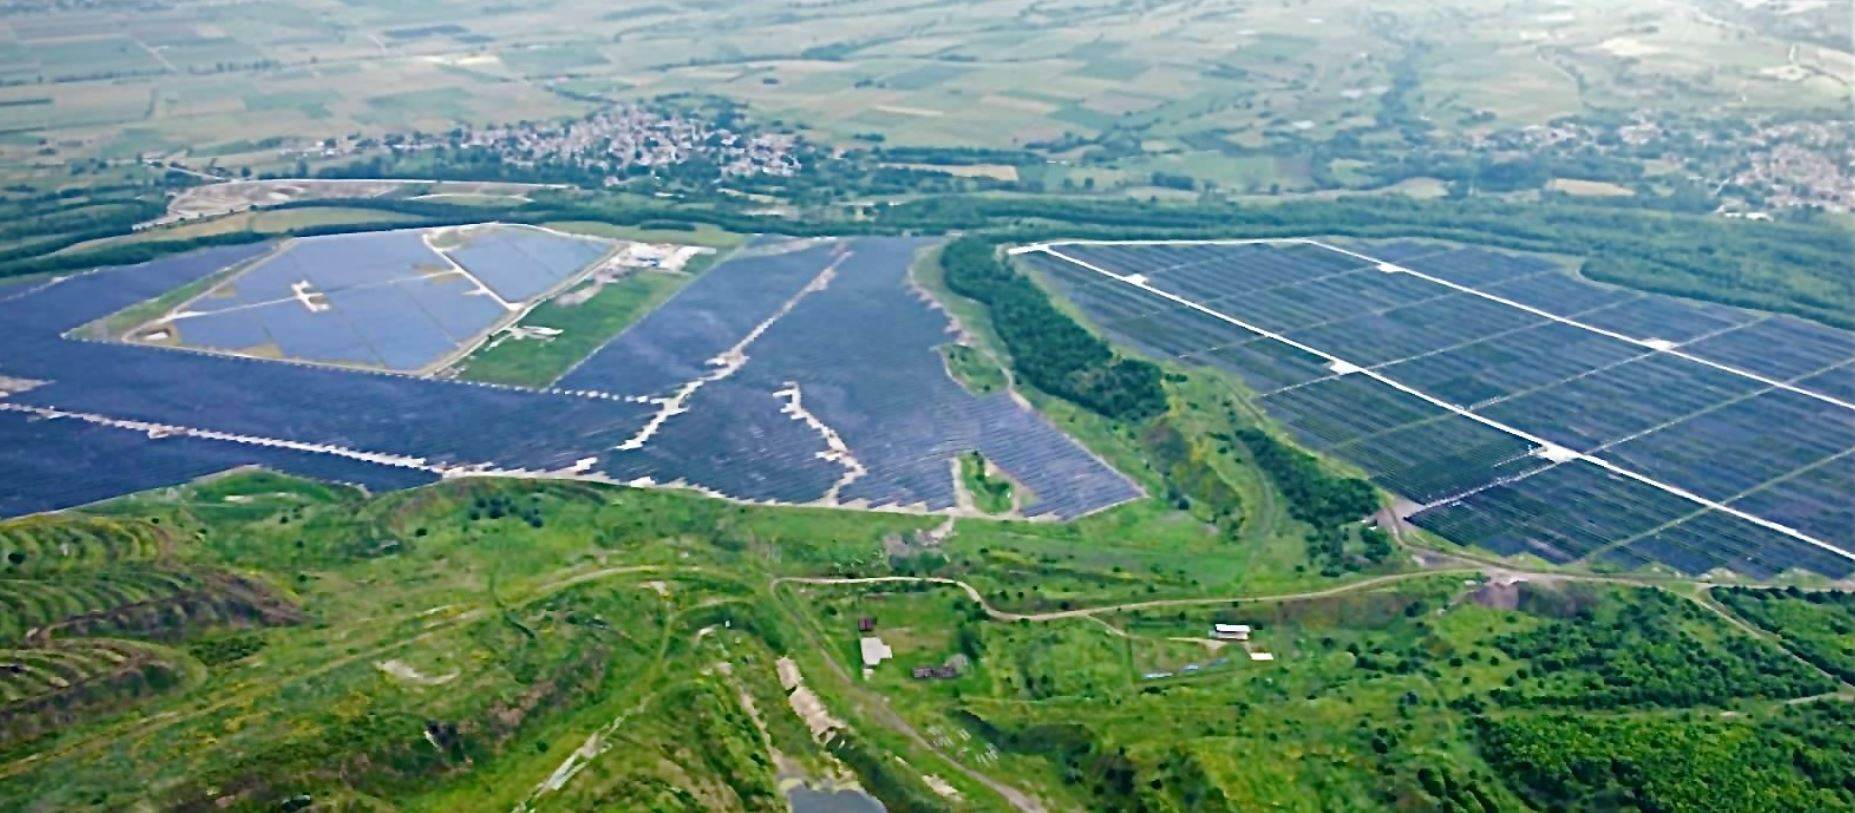 Κοζάνη: Το μεγάλο φωτοβολταικό πάρκο 550 MW της ΔΕΗ στο Ορυχείο της Πτολεμαίδας